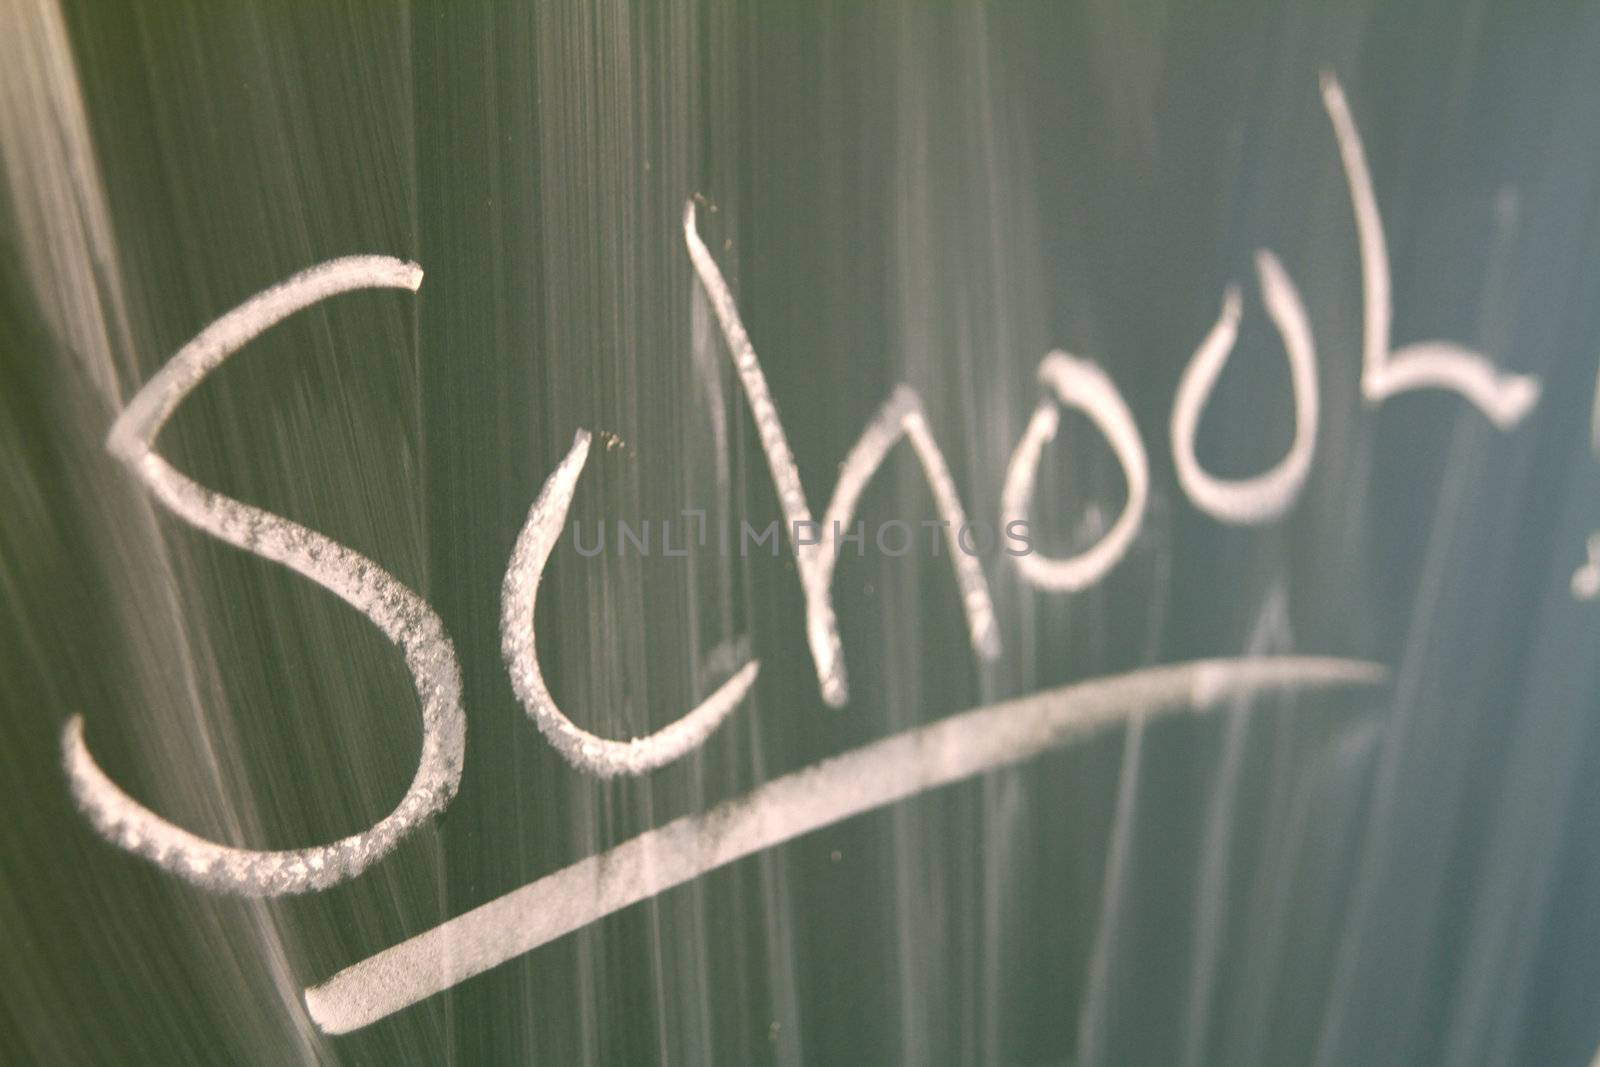 Closeup of the word "school" written on a green blackboard.